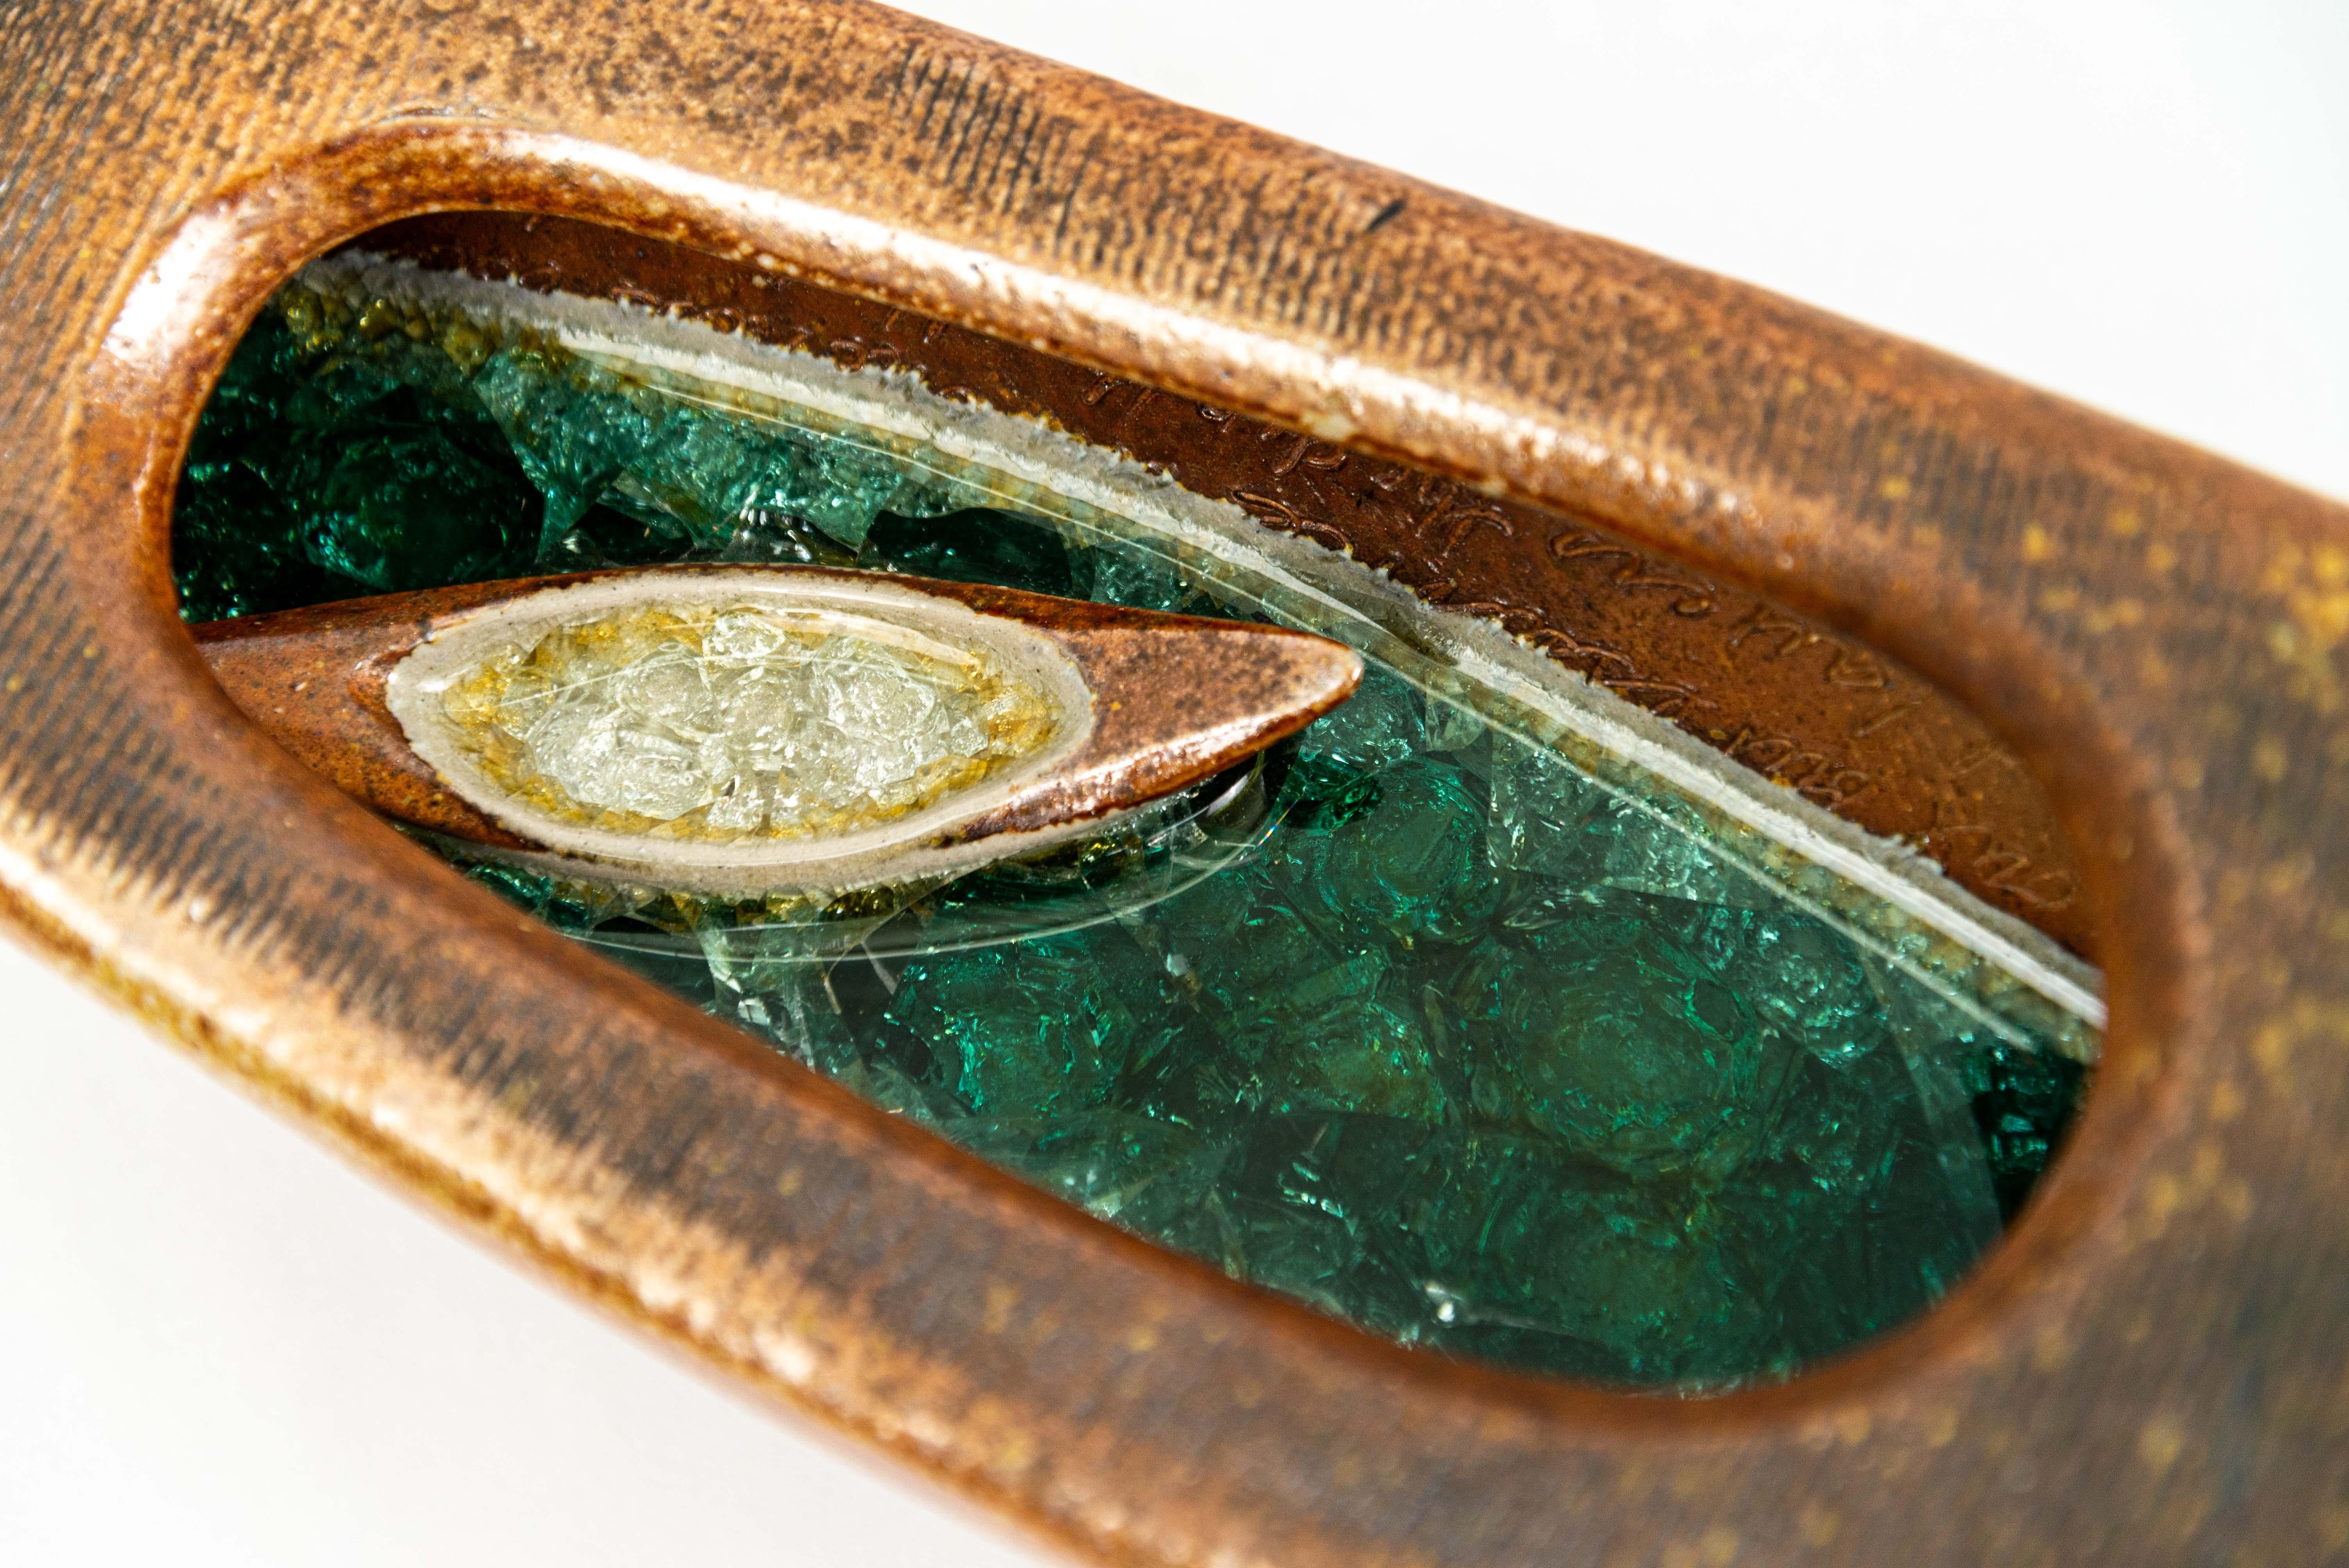 D'une forme, d'une couleur et d'une texture étonnantes, cet objet fait partie d'une nouvelle série de récipients en argile créés par la céramiste américaine Heather Allen &New. Le navire en forme de bateau symbolise le voyage de la vie pour